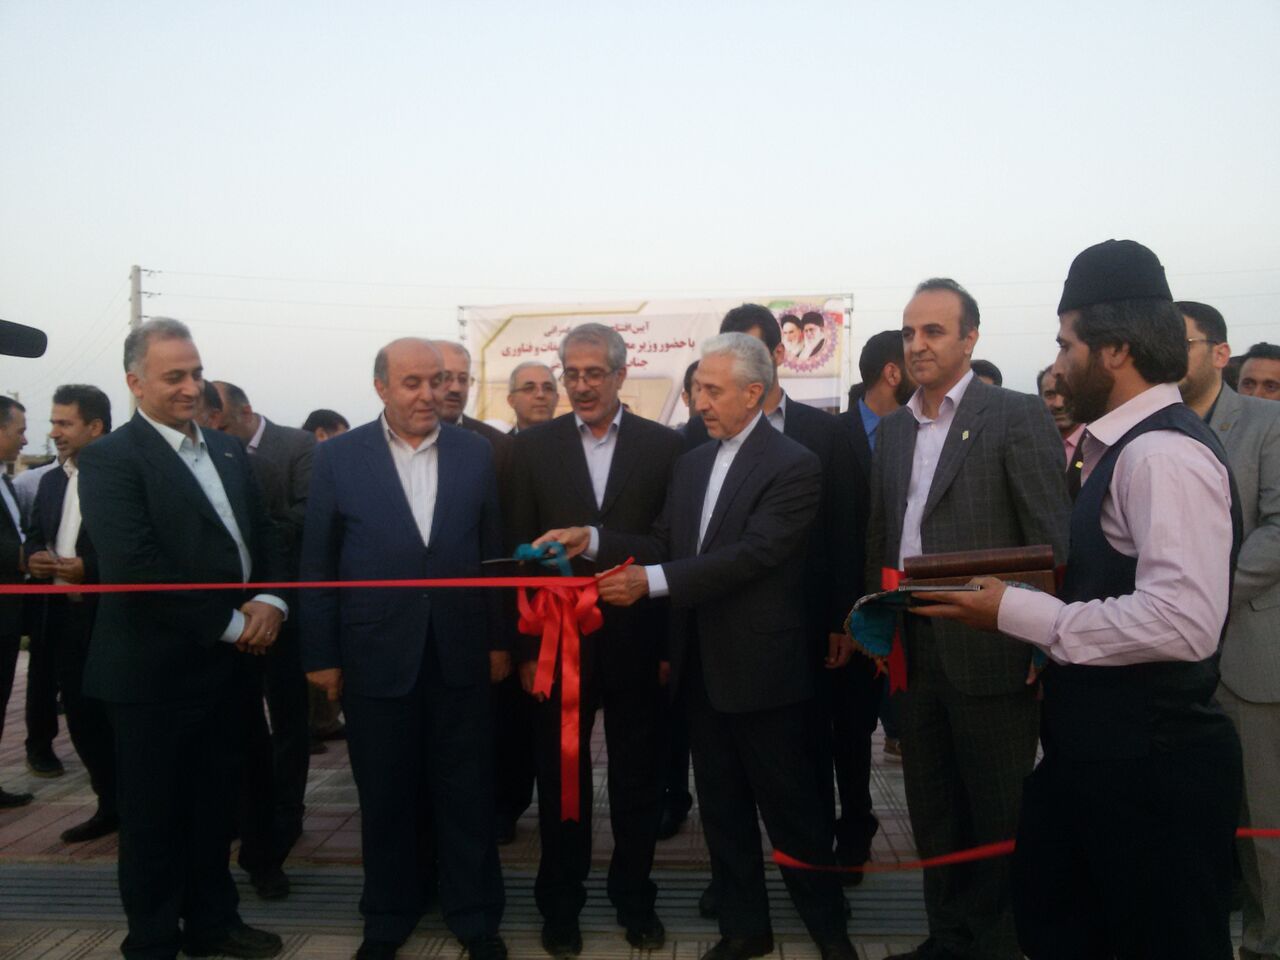 افتتاح سه پروژه دانشگاه علم و فناوری مازندران در بهشهر